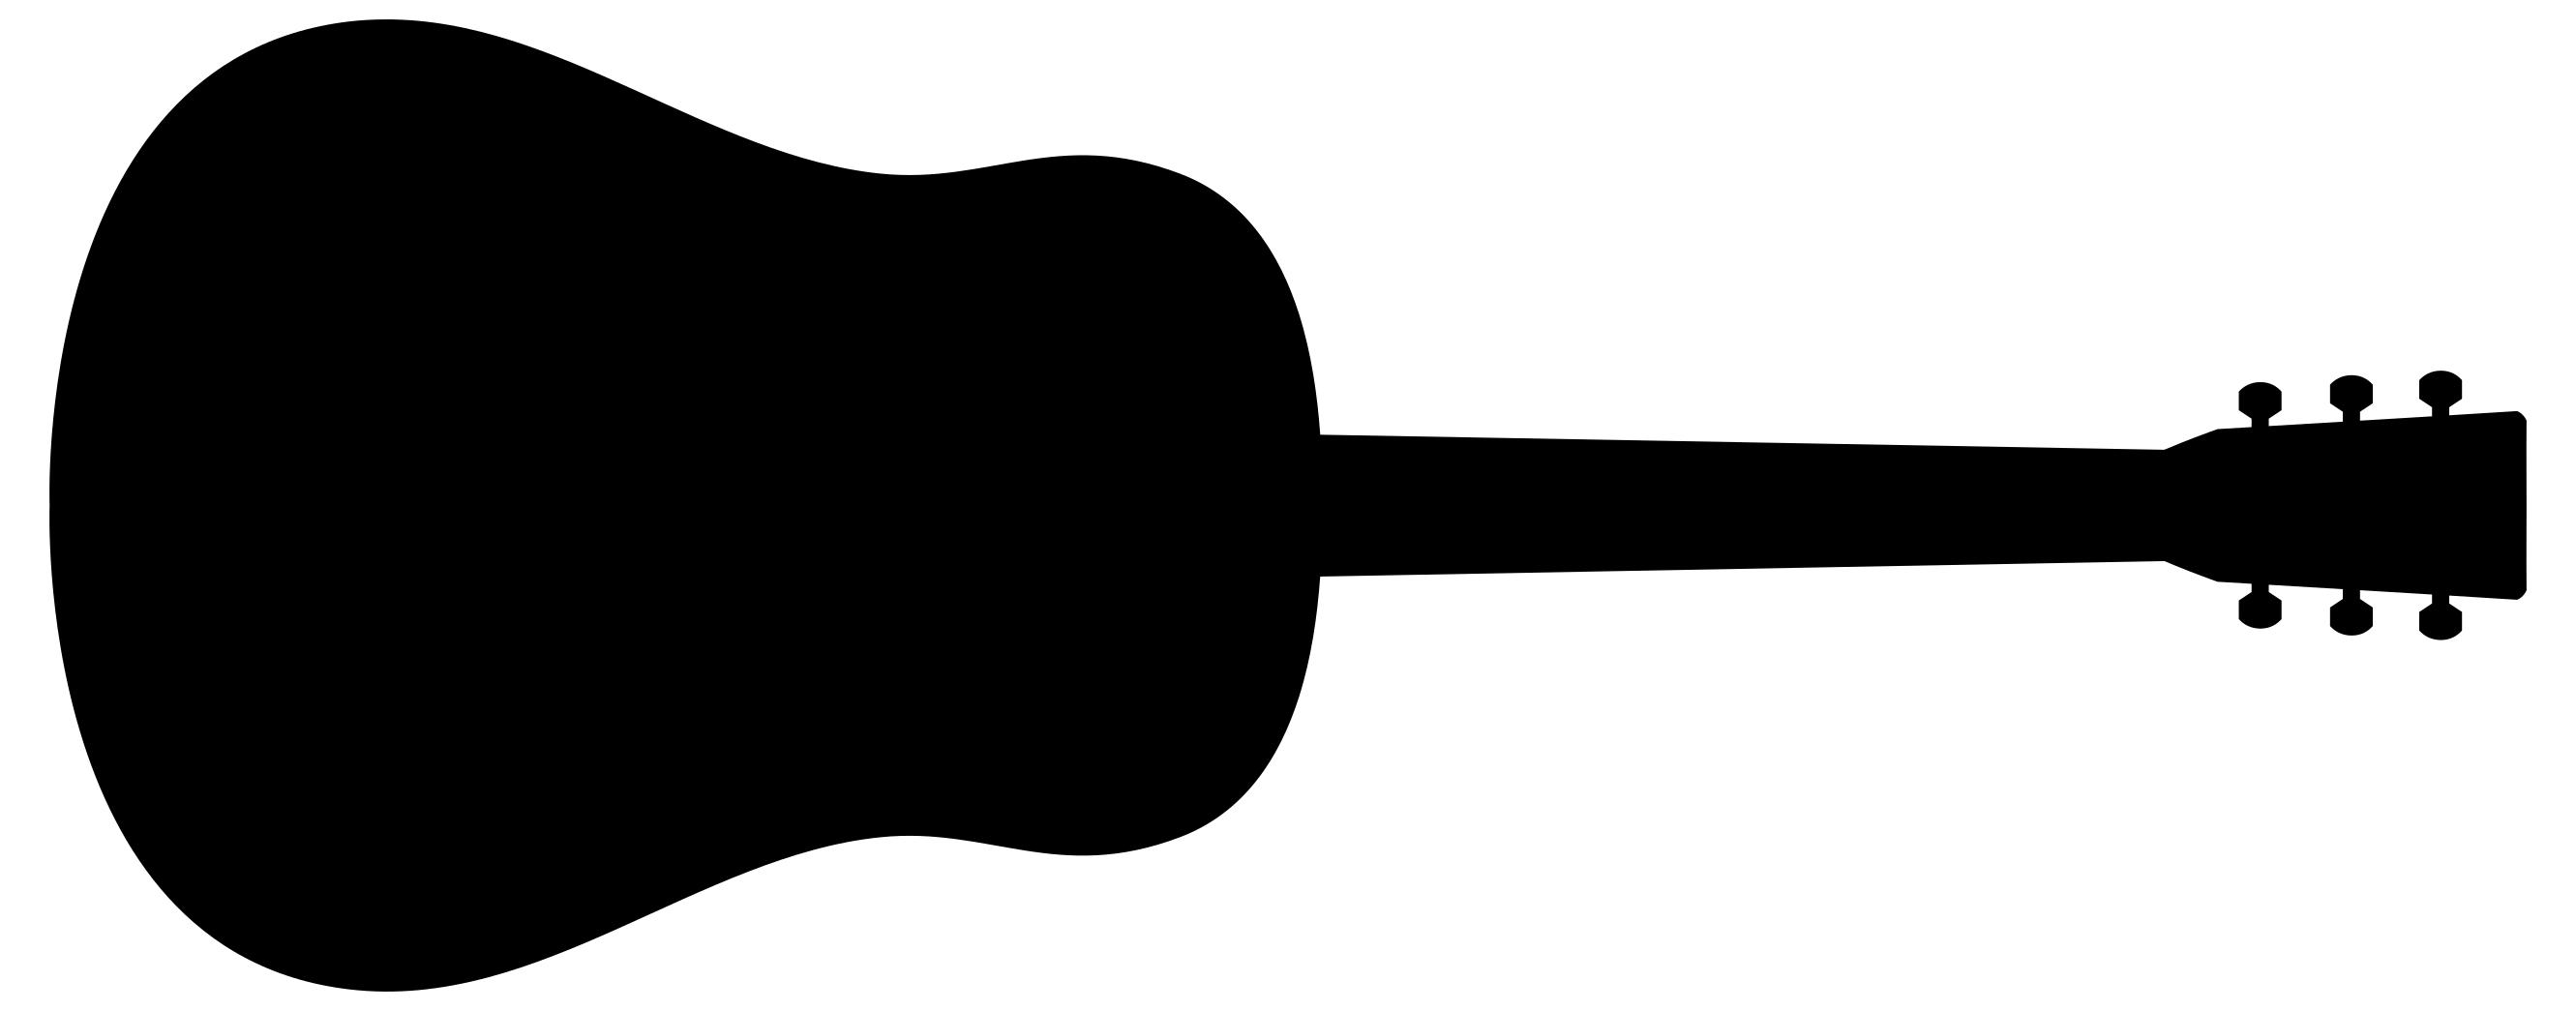 Guitar Silhouette at GetDrawings.com.